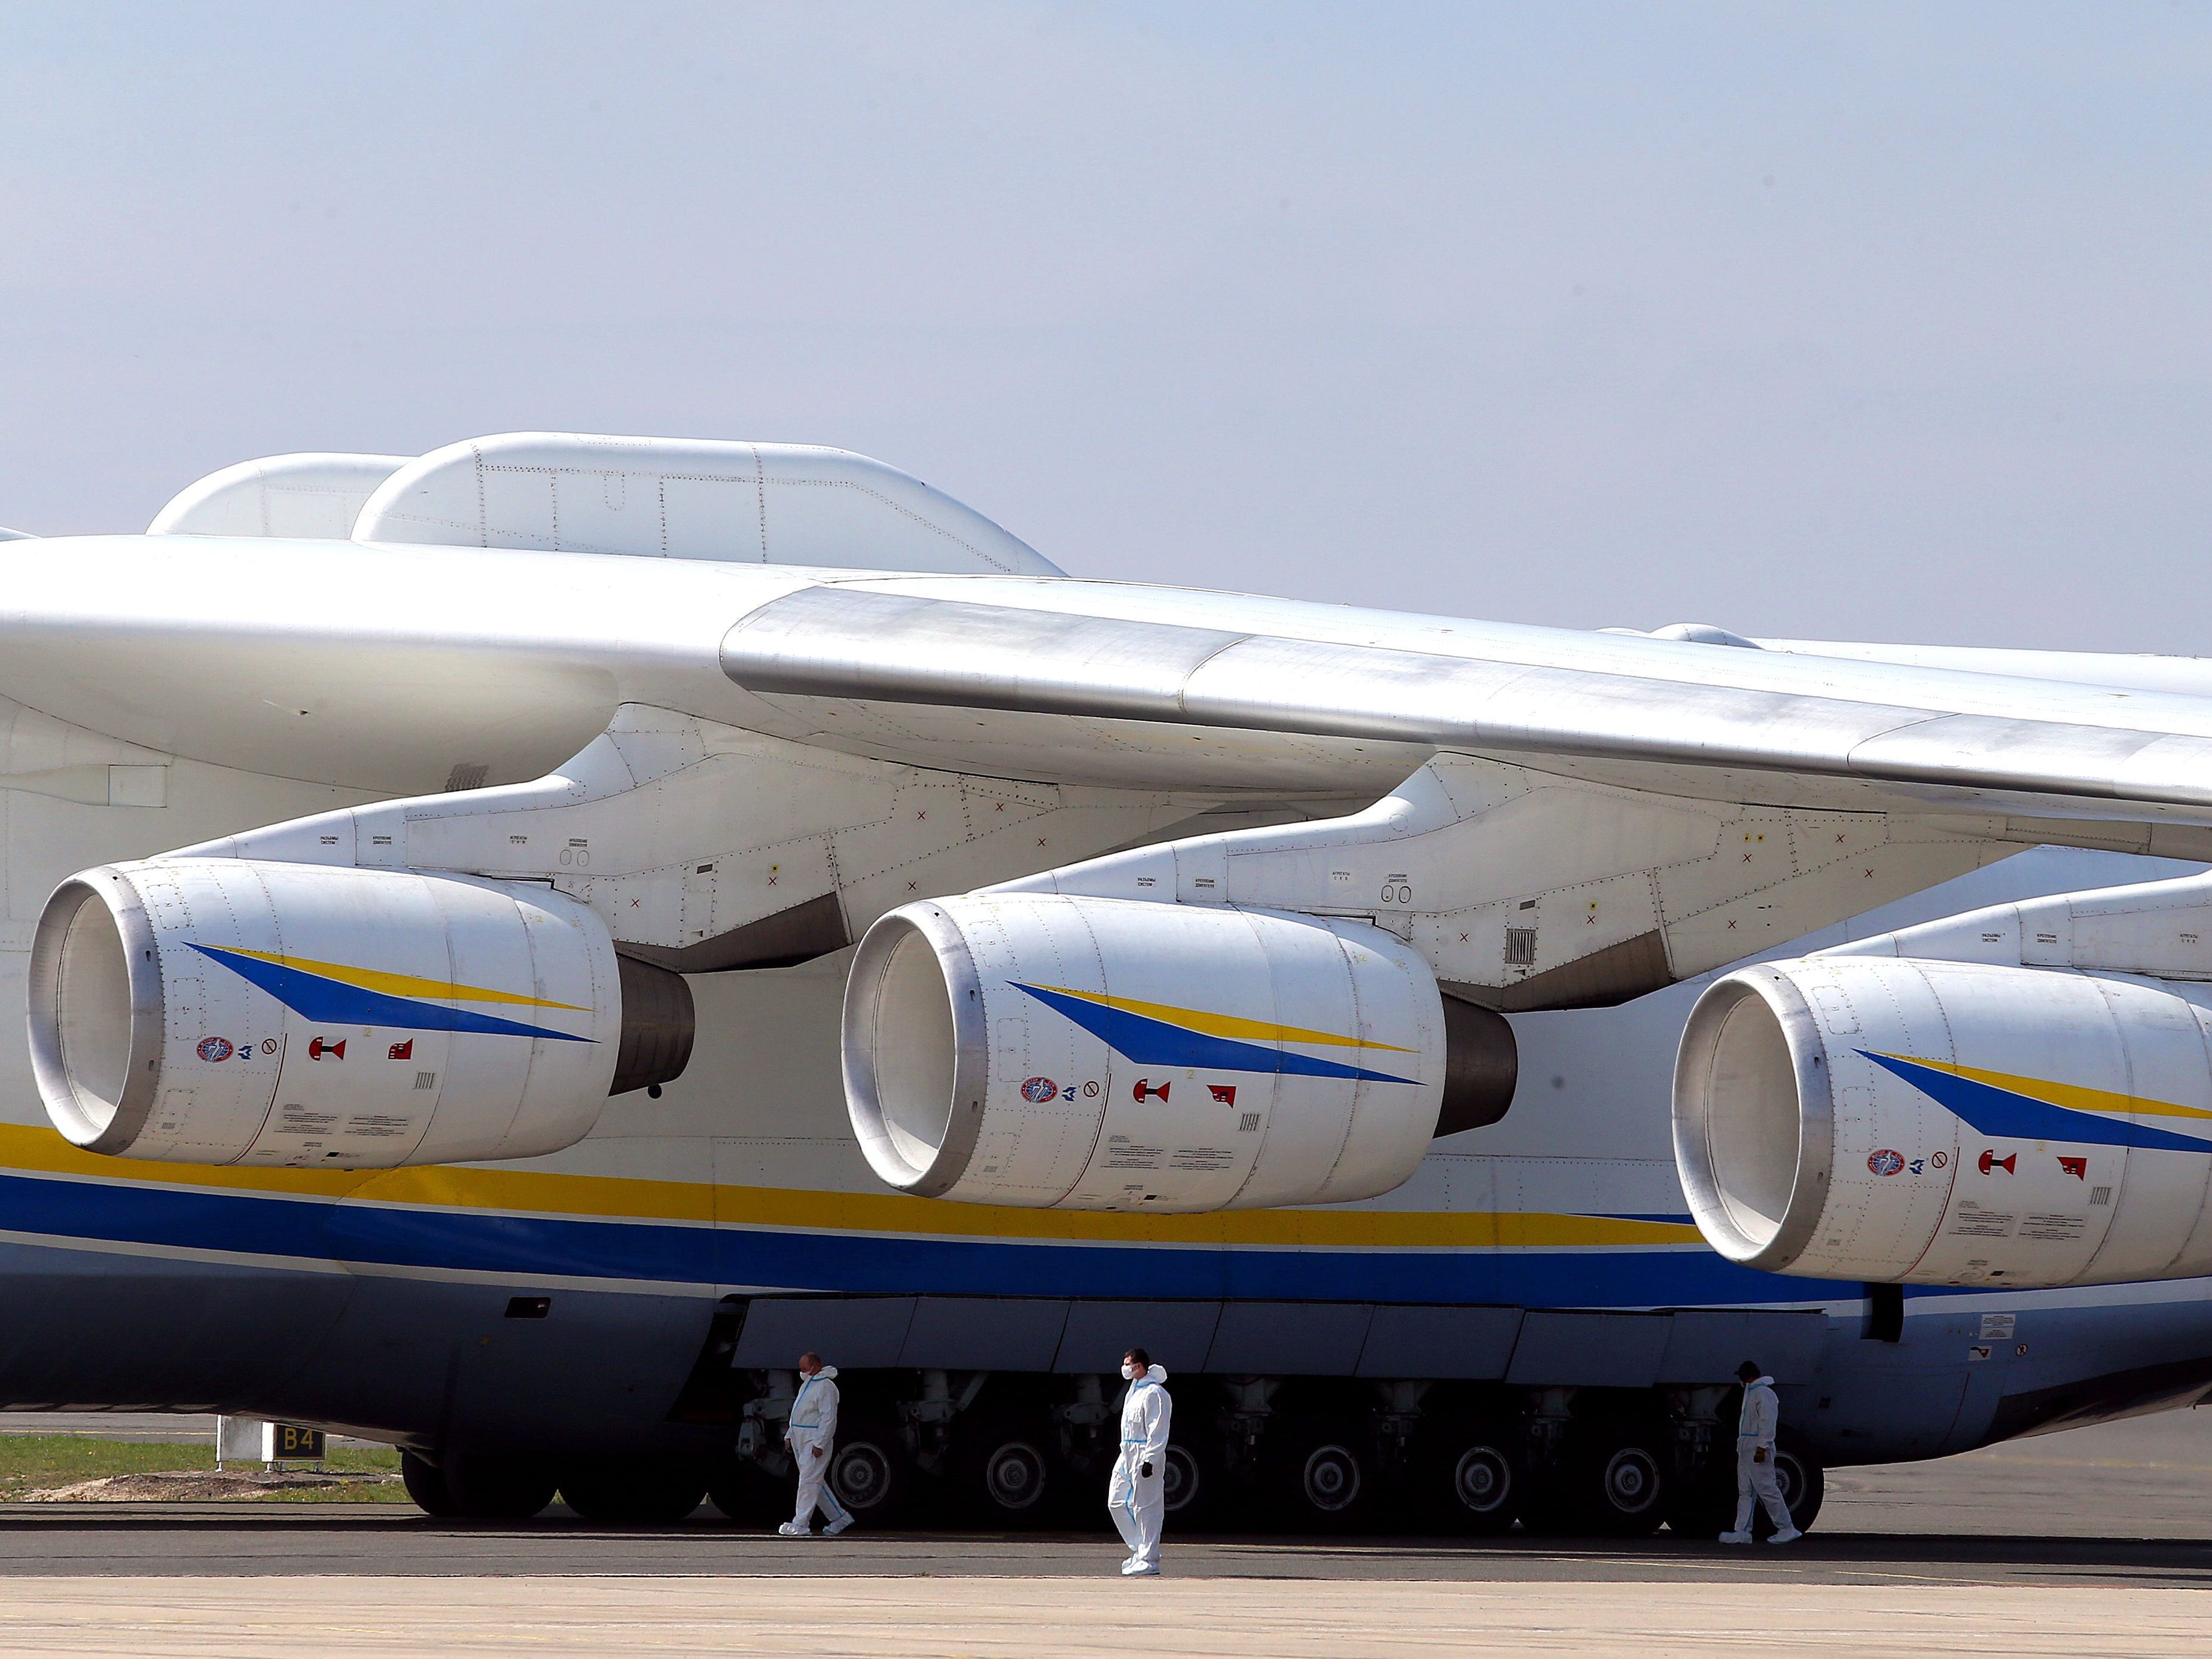 Dieses Bild zeigt den Flügel und drei der sechs Turbofans der ukrainischen Antonov An-225 Mriya, die aus China kommen, um 8,6 Millionen Gesichtsmasken und 150 Tonnen Sanitärausrüstung zu liefern, die von einem Privatkunden am Flughafen Paris-Vatry in Bussy bestellt wurden Lettree, am 19. April 2020, am 34. Tag einer strengen Sperrung in Frankreich, um die Ausbreitung von COVID-19 (neuartiges Coronavirus) zu stoppen.  - Die Antonov-225 ist ein Frachtflugzeug, das als Teil des Raumfahrtprogramms der ehemaligen Sowjetunion entwickelt wurde.  Das einzige im Einsatz befindliche Exemplar kann bis zu 250 Tonnen bis zu 4.000 km tragen.